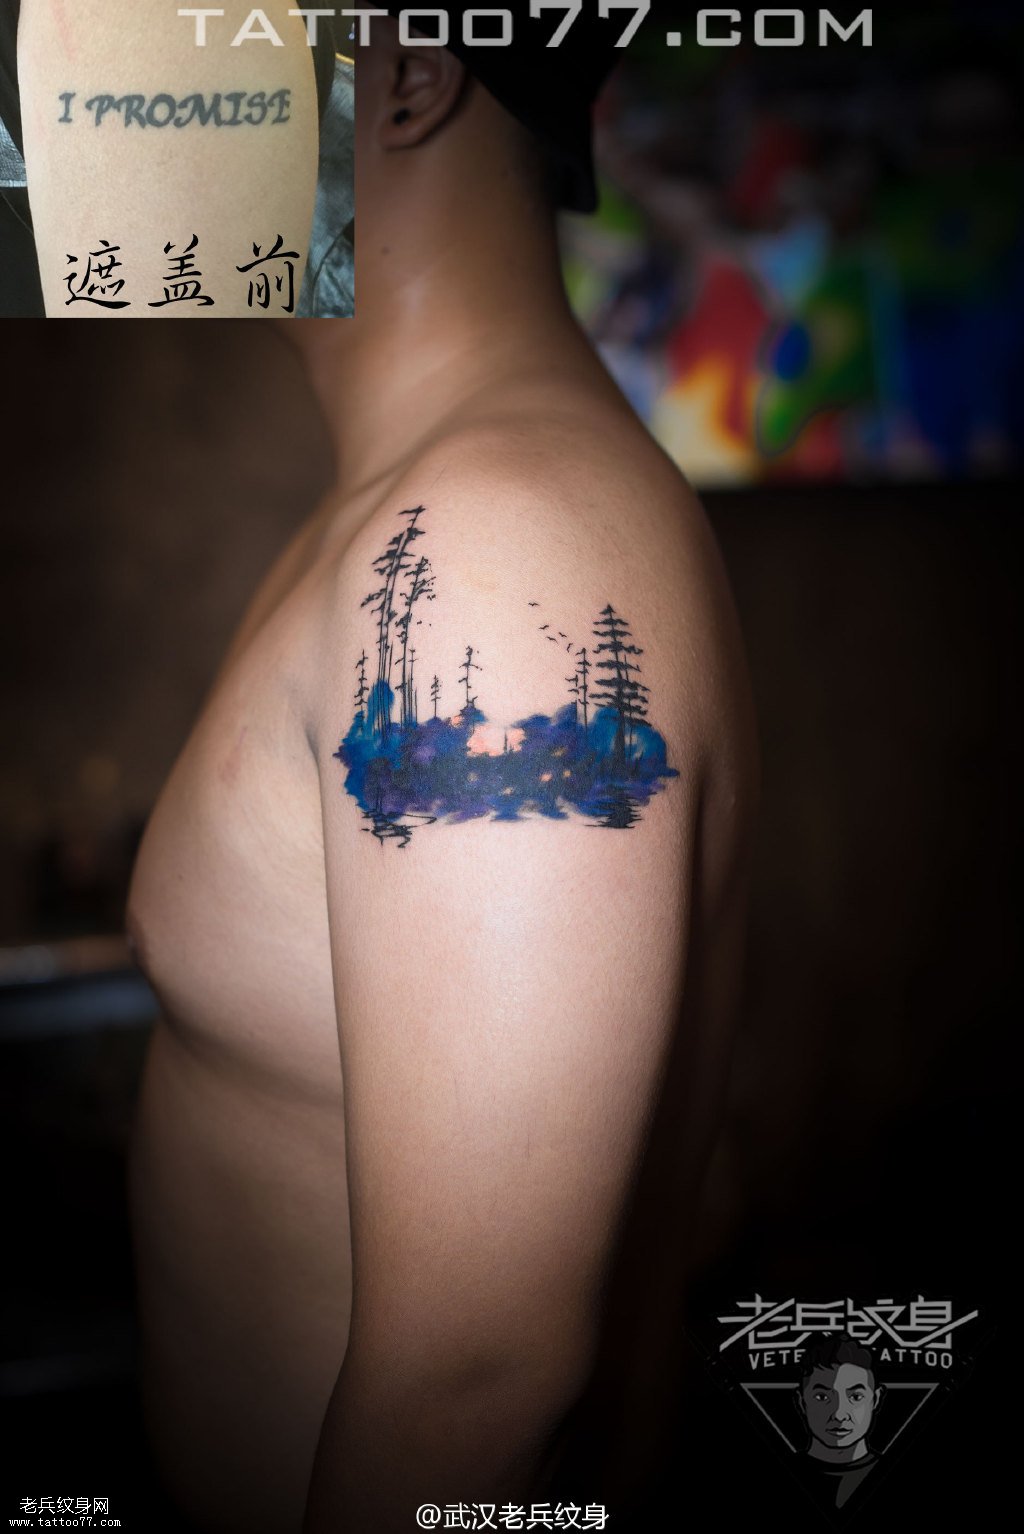 大臂水墨树林纹身图案作品遮盖旧纹身